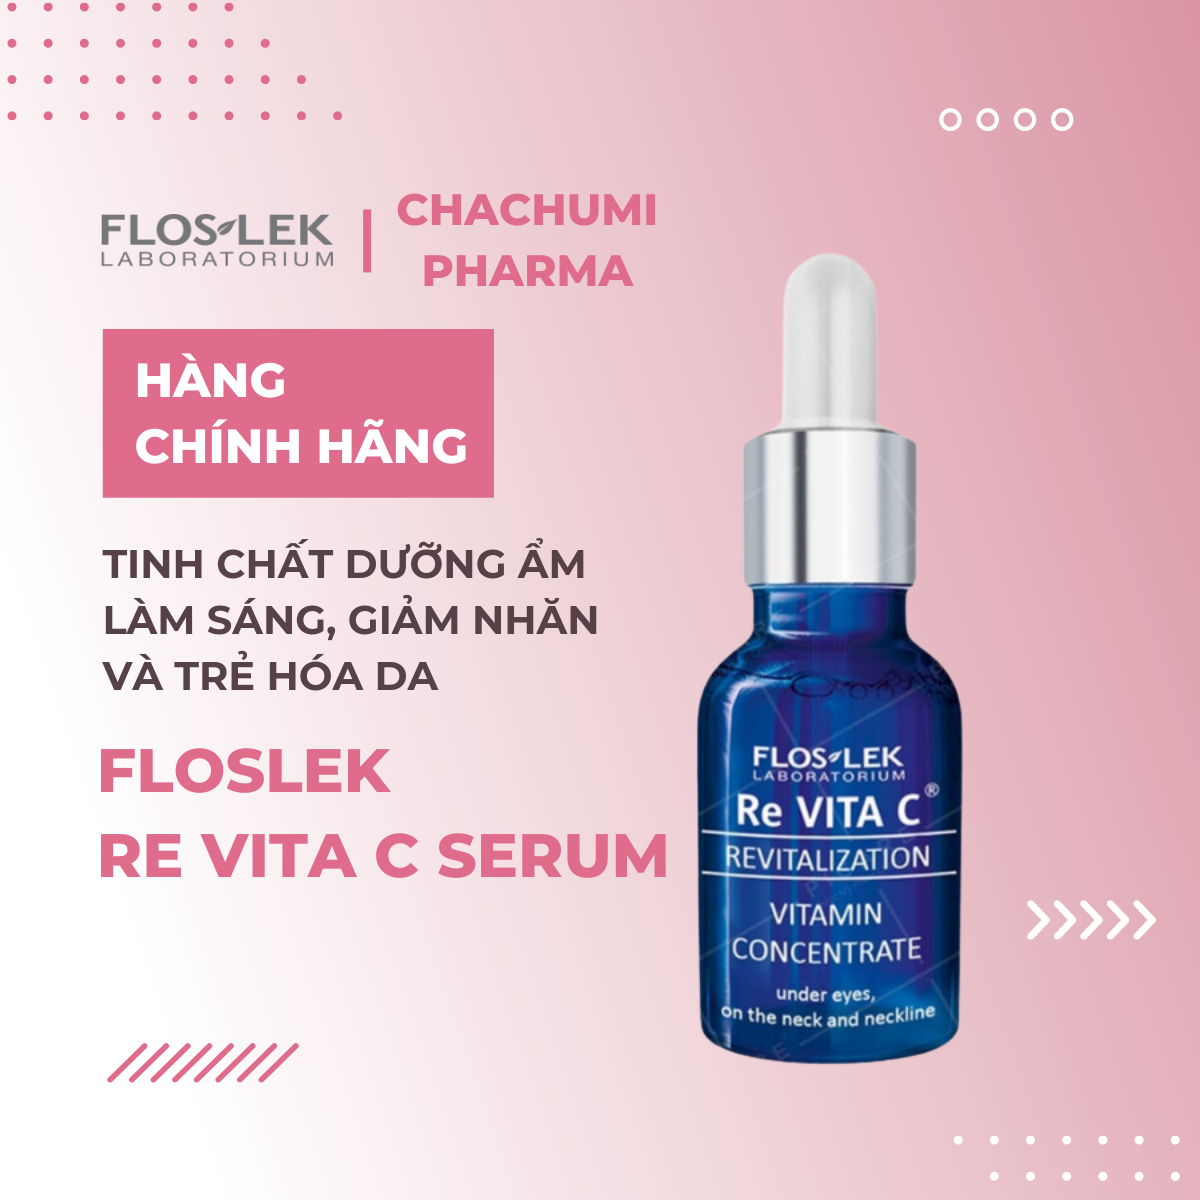 Floslek Re Vita C Serum - Tinh chất dưỡng ẩm làm sáng, giảm nhăn và trẻ hóa da